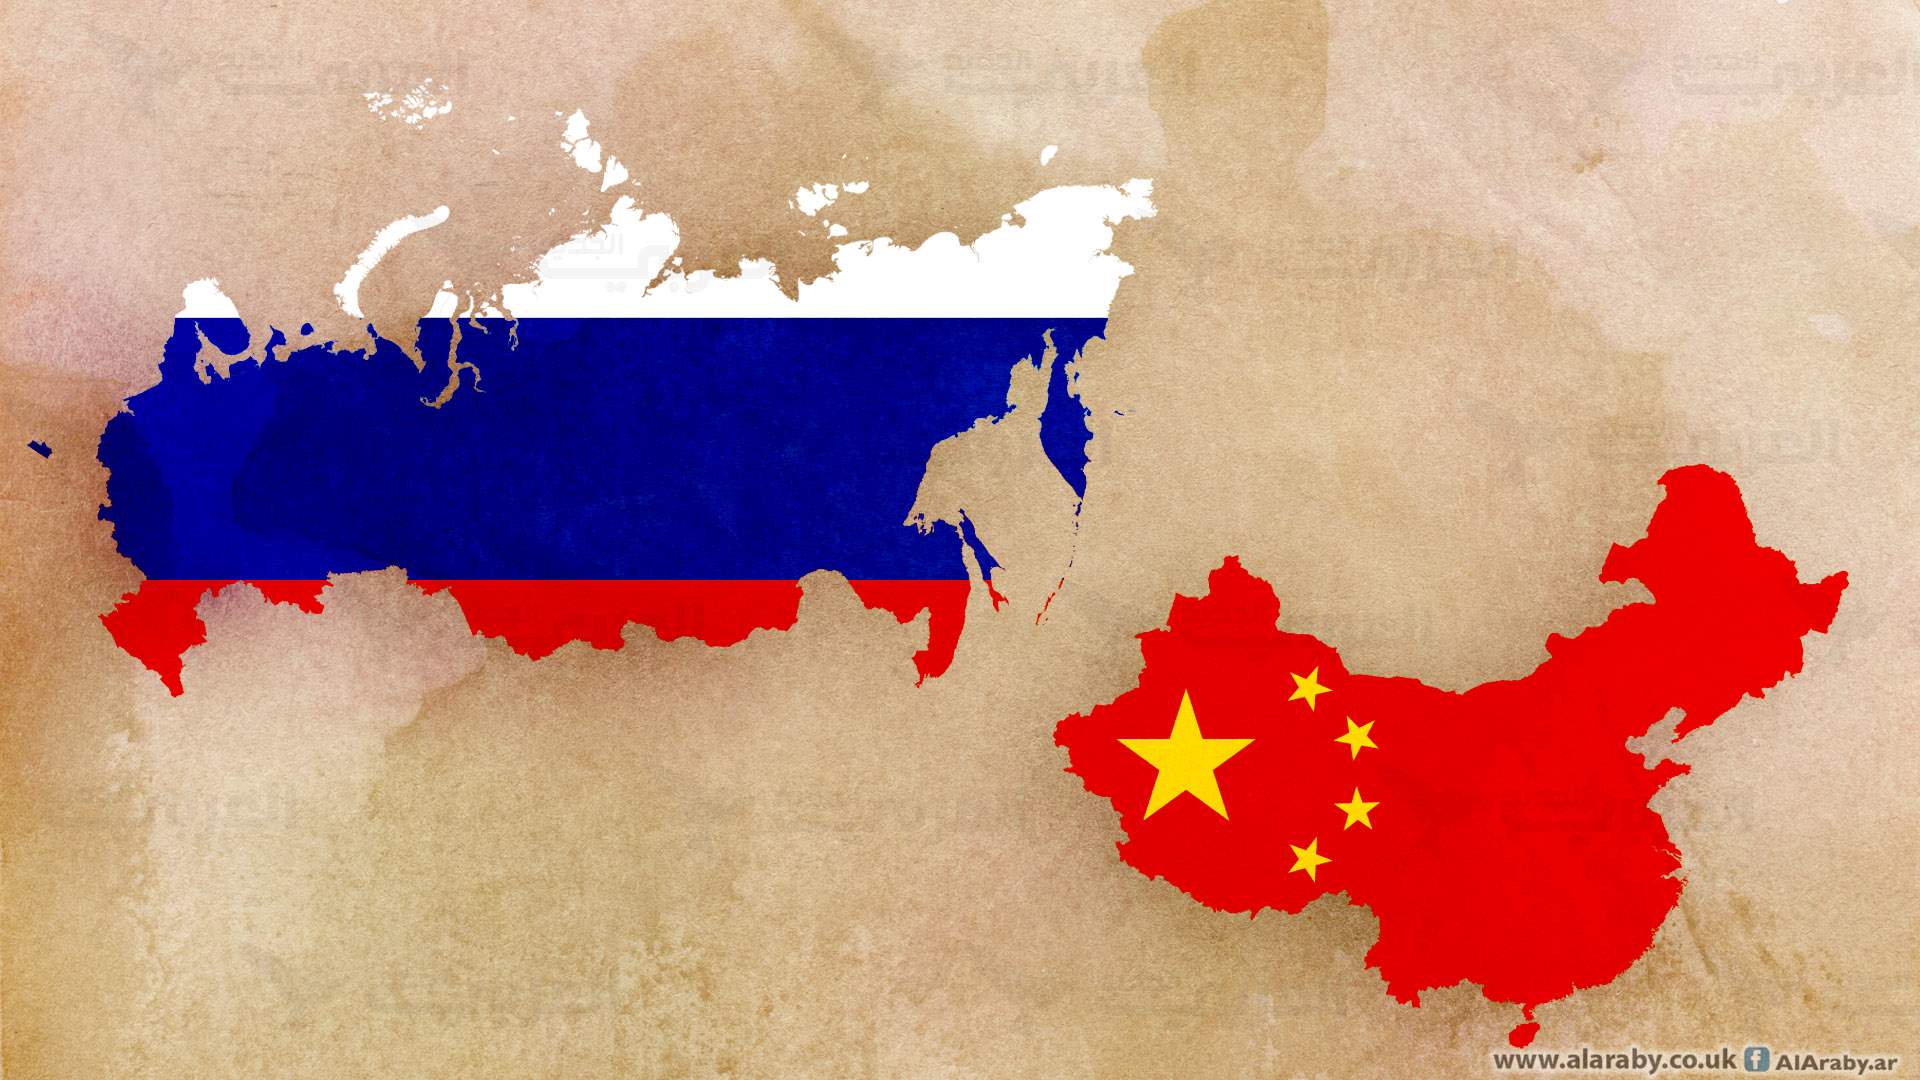 الصين وروسيا: لمواجهة القوى الخارجية في جنوب شرق آسيا